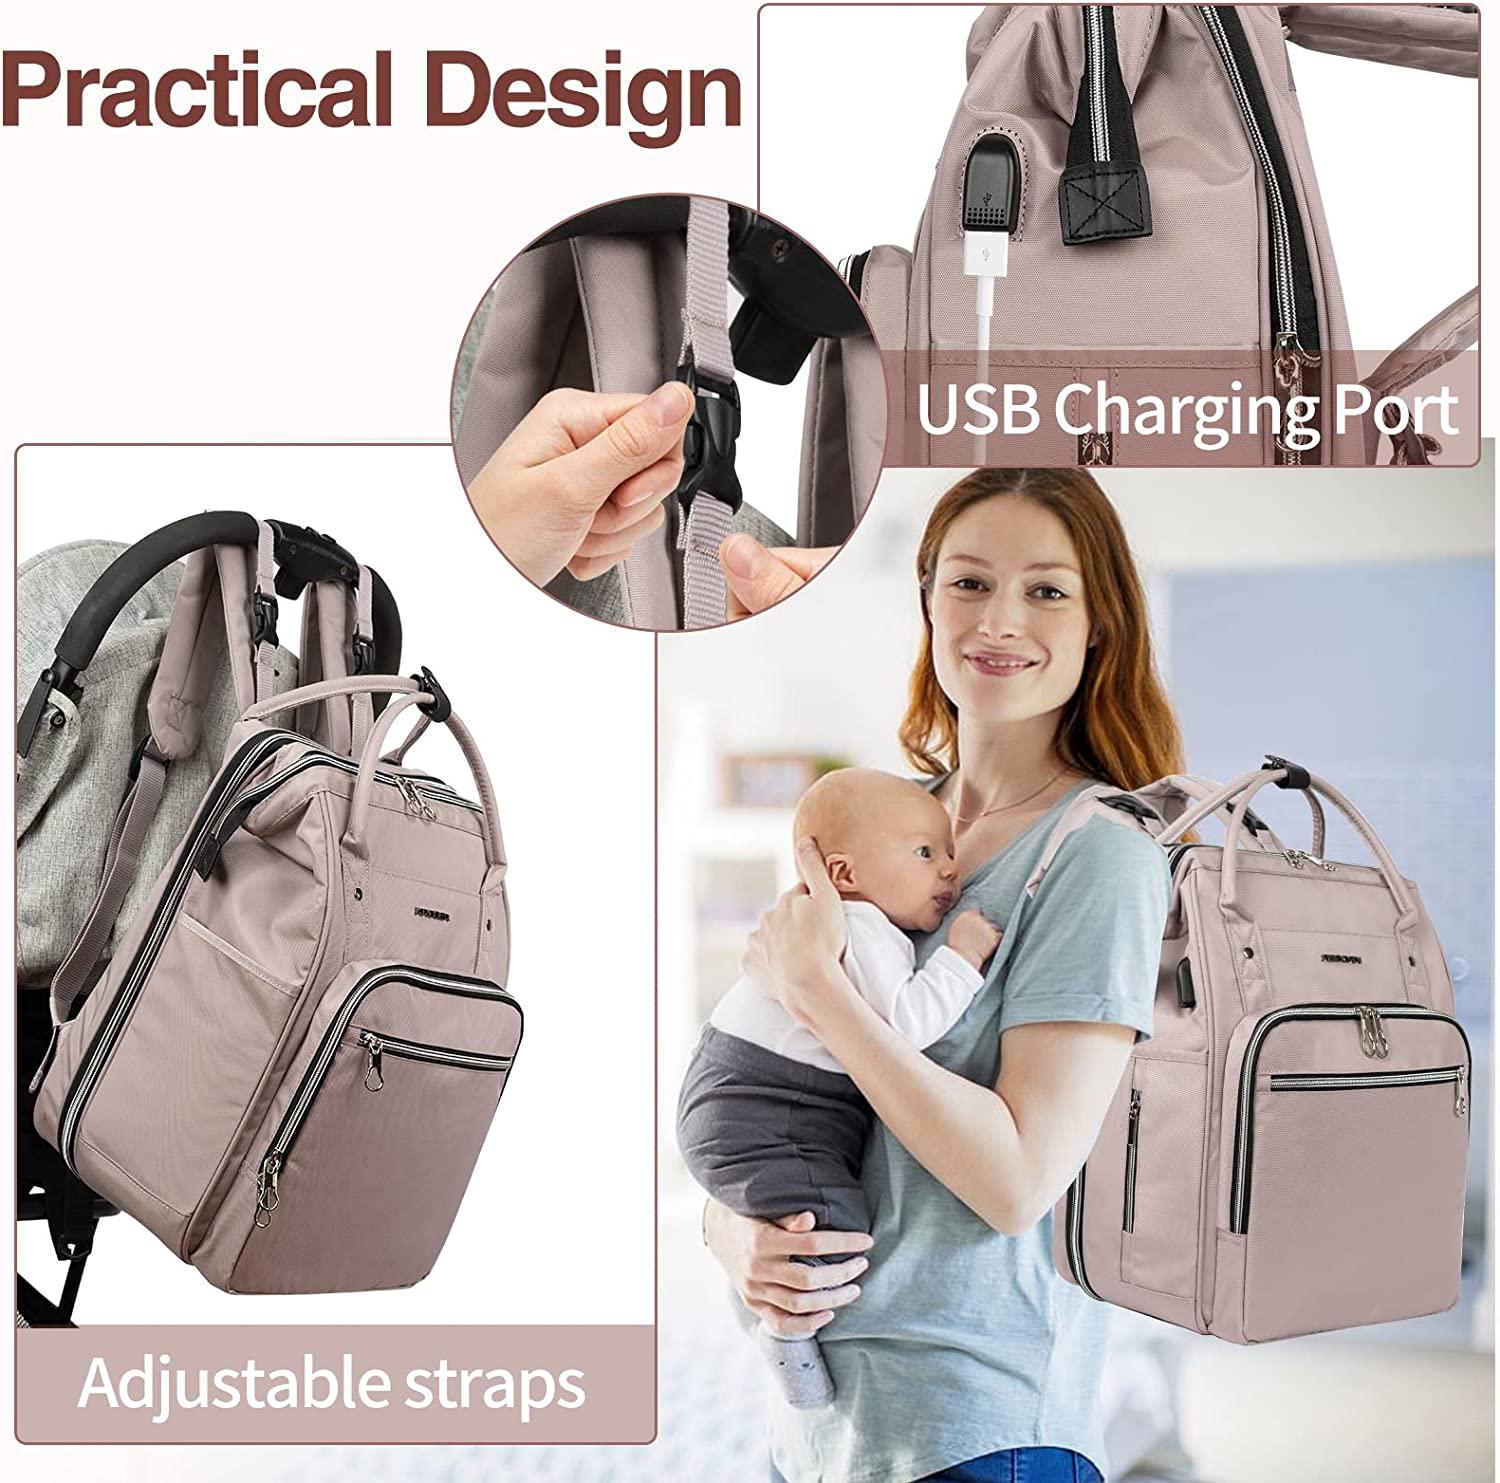 Kroser Laptop Backpack Travel Bag Large Fits 17.3 Screen Gray Padded | eBay